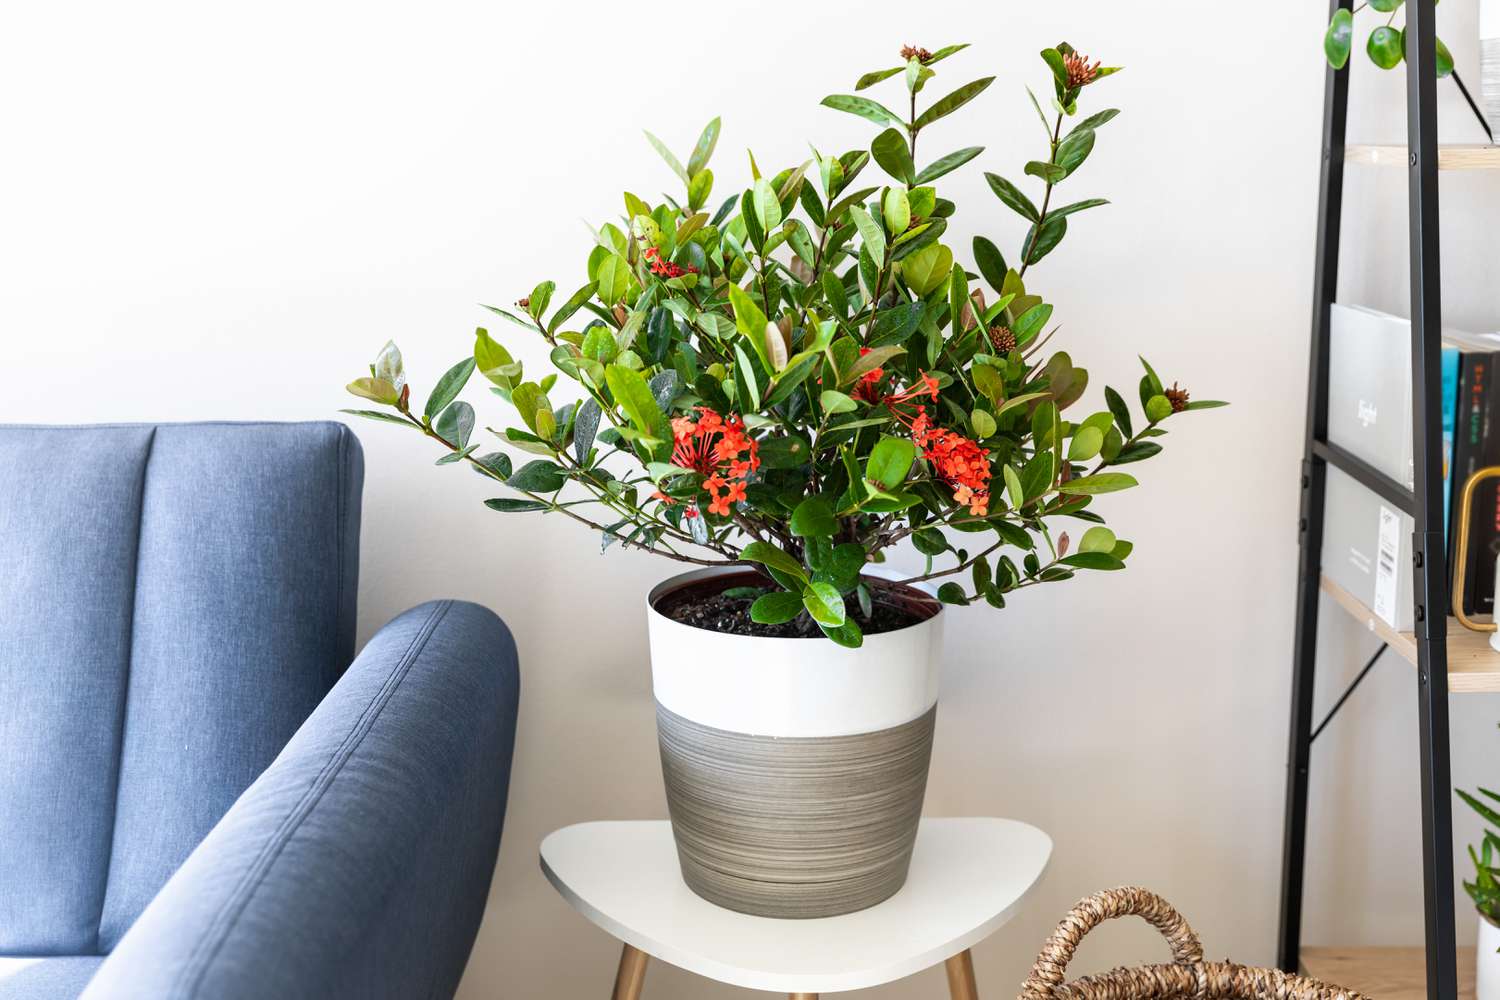 Ixora-Pflanze im Topf mit roten Blüten und Blättern im Wohnbereich